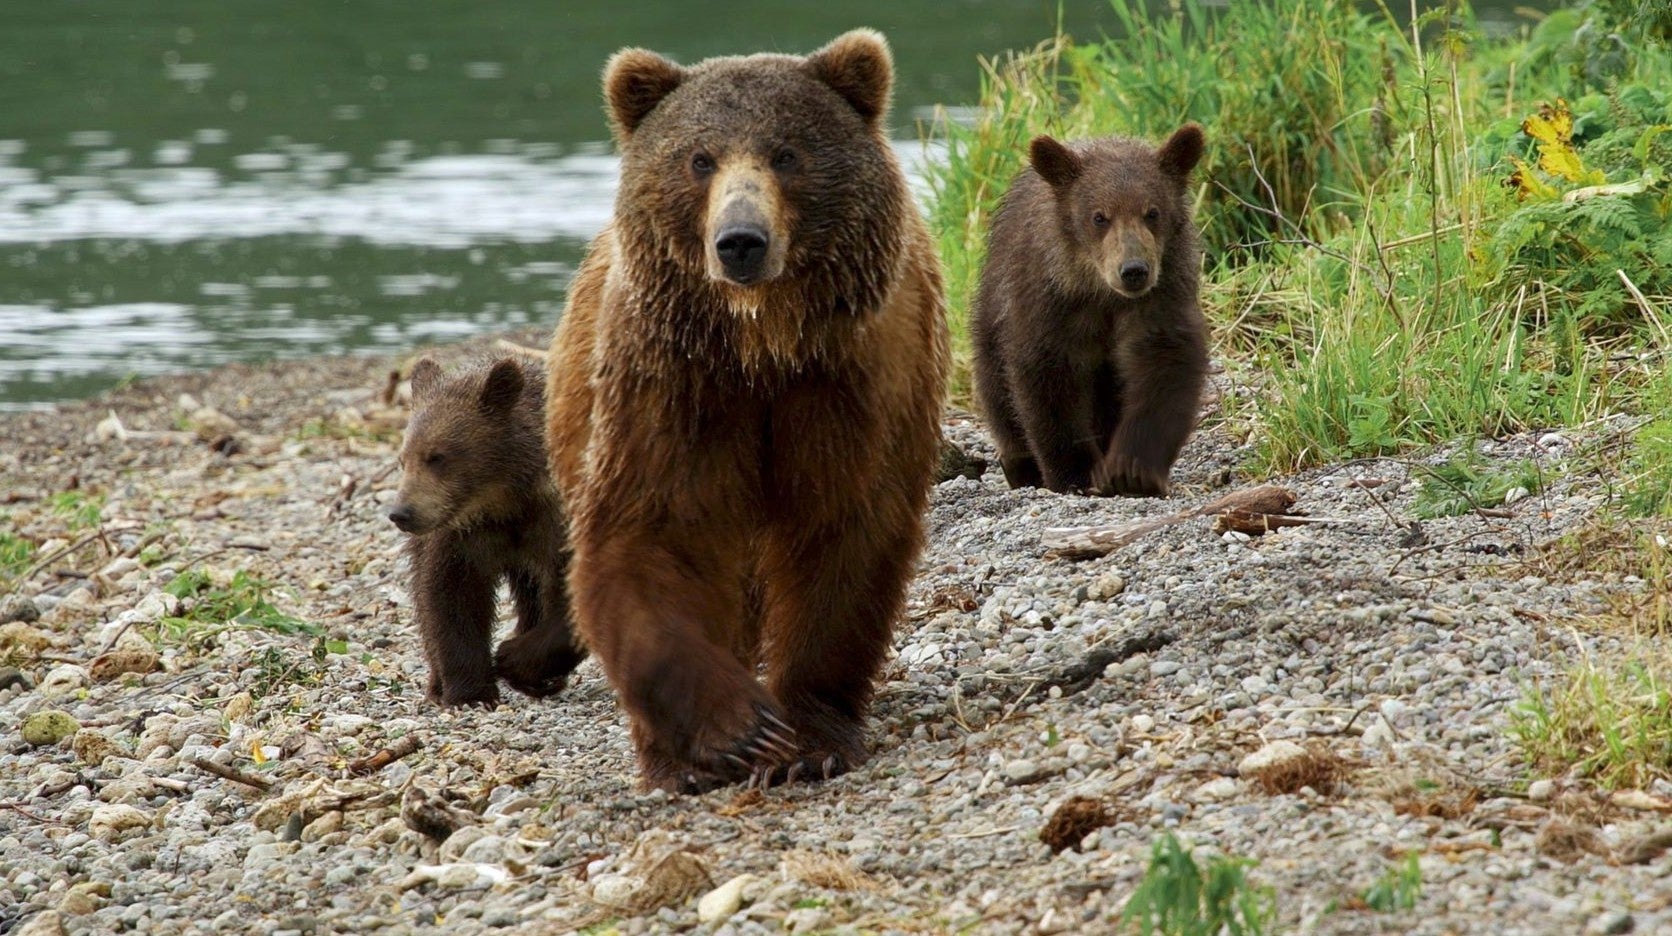 Os Ursos de Kamchatka - A Vida Comea